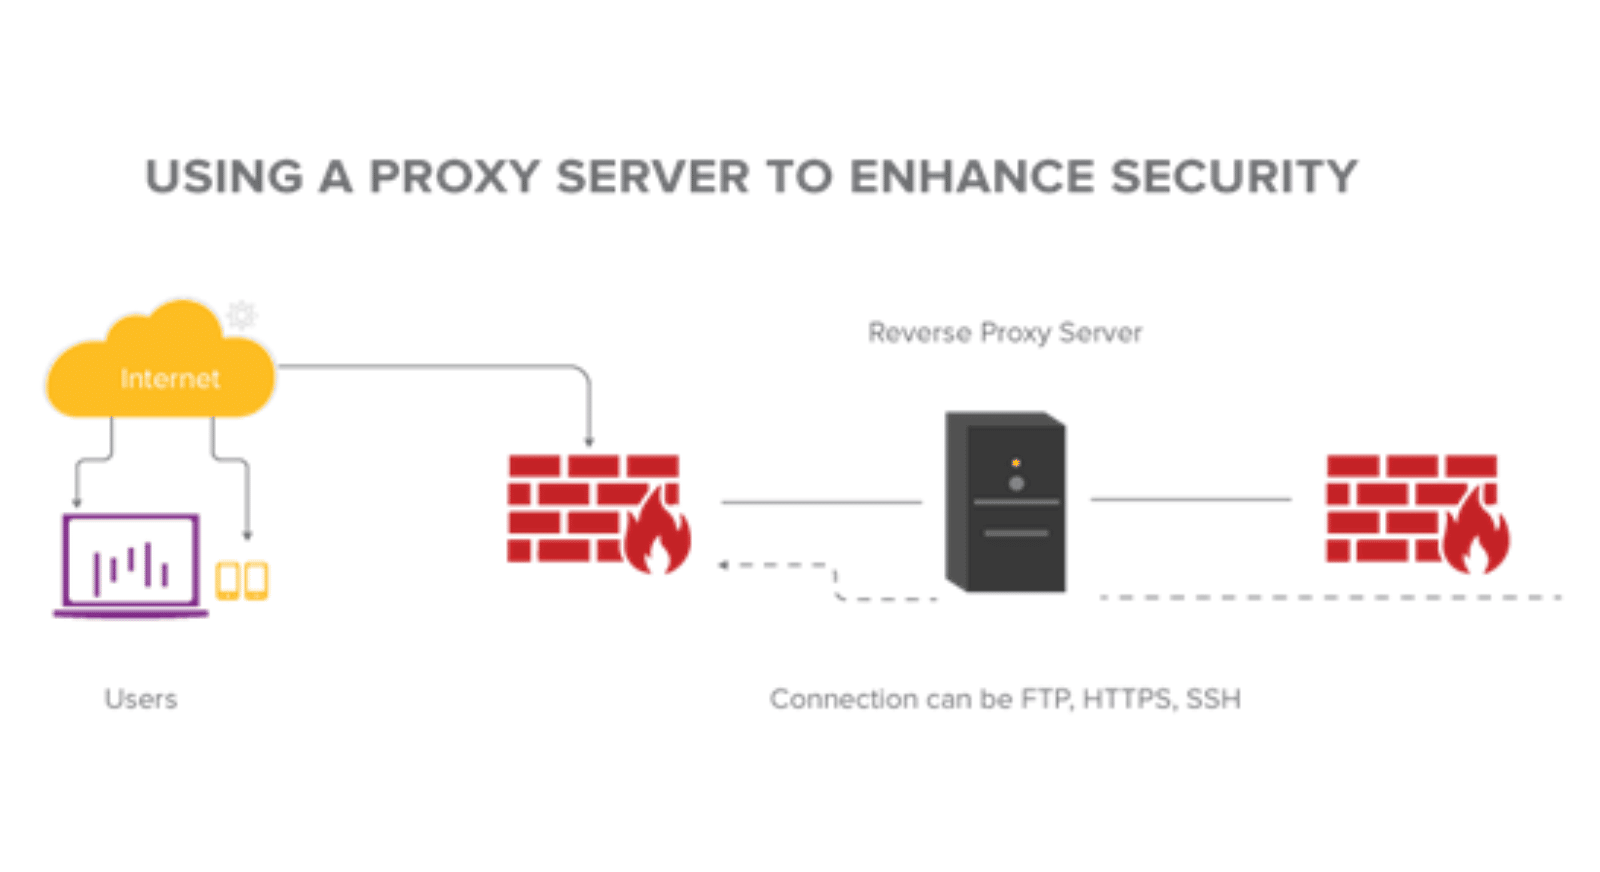 En proxyserver kan fungere som en firewall mod angreb